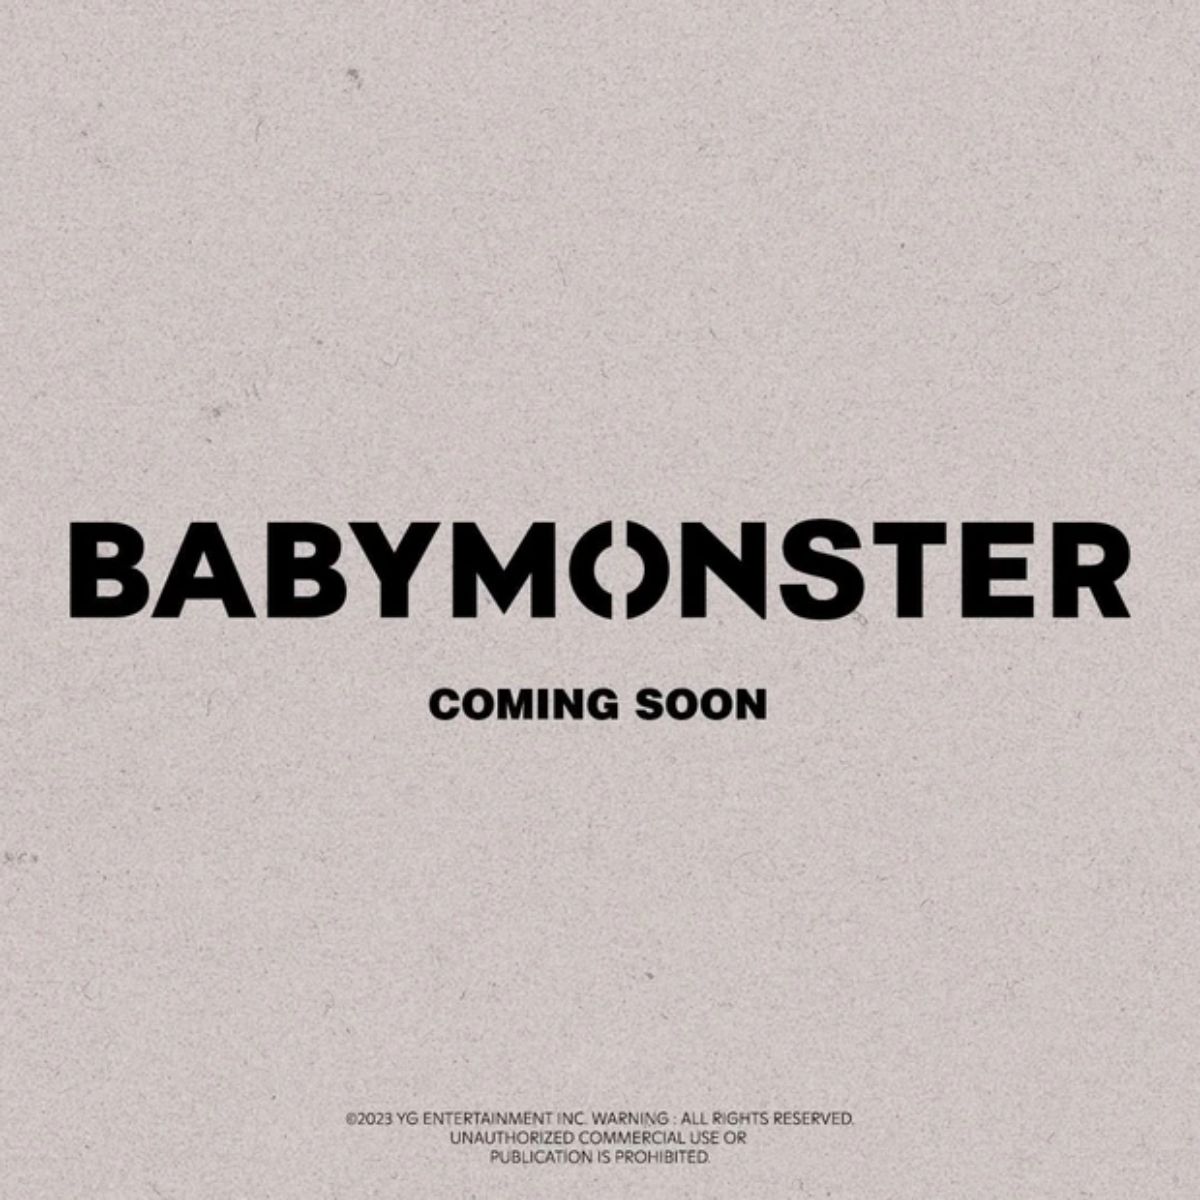 Trưa ngày 10/10, YG đã chính thức tung poster, đồng thời thông báo về việc ra mắt nhóm nữ mới BABYMONSTER vào tháng 11 năm nay